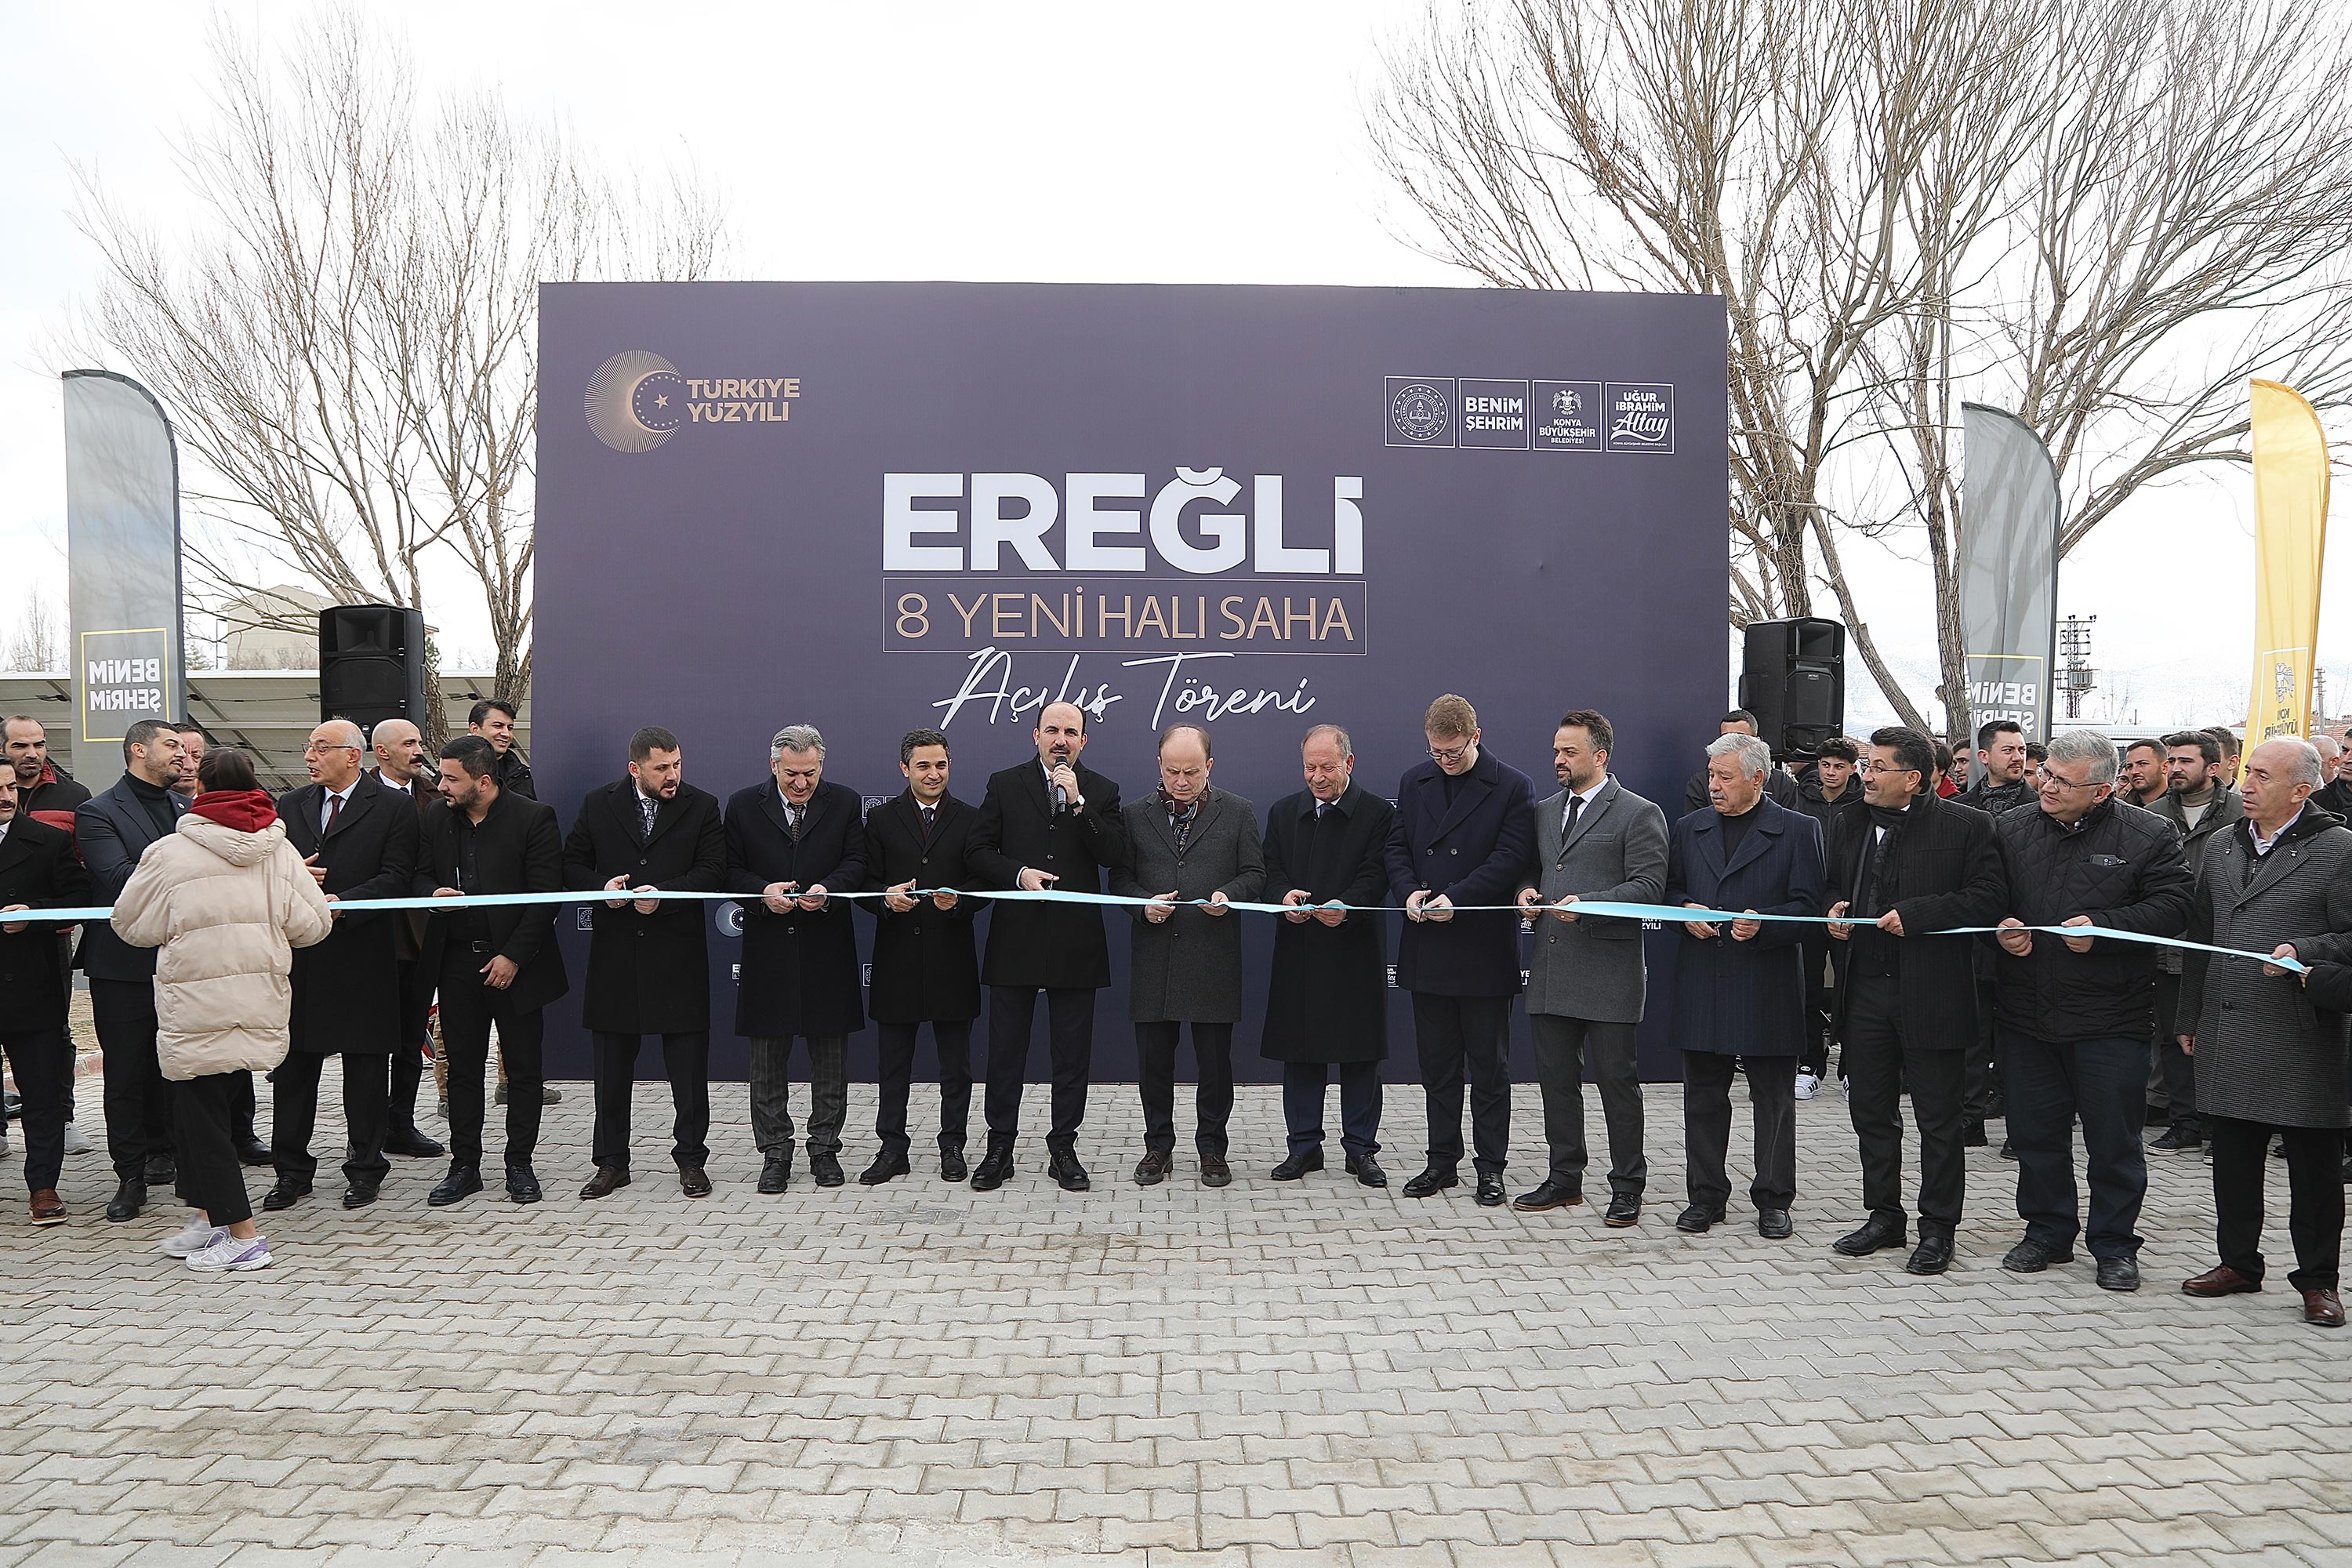 Ereğli’de 8 halı sahanın açılışı gerçekleştirildi